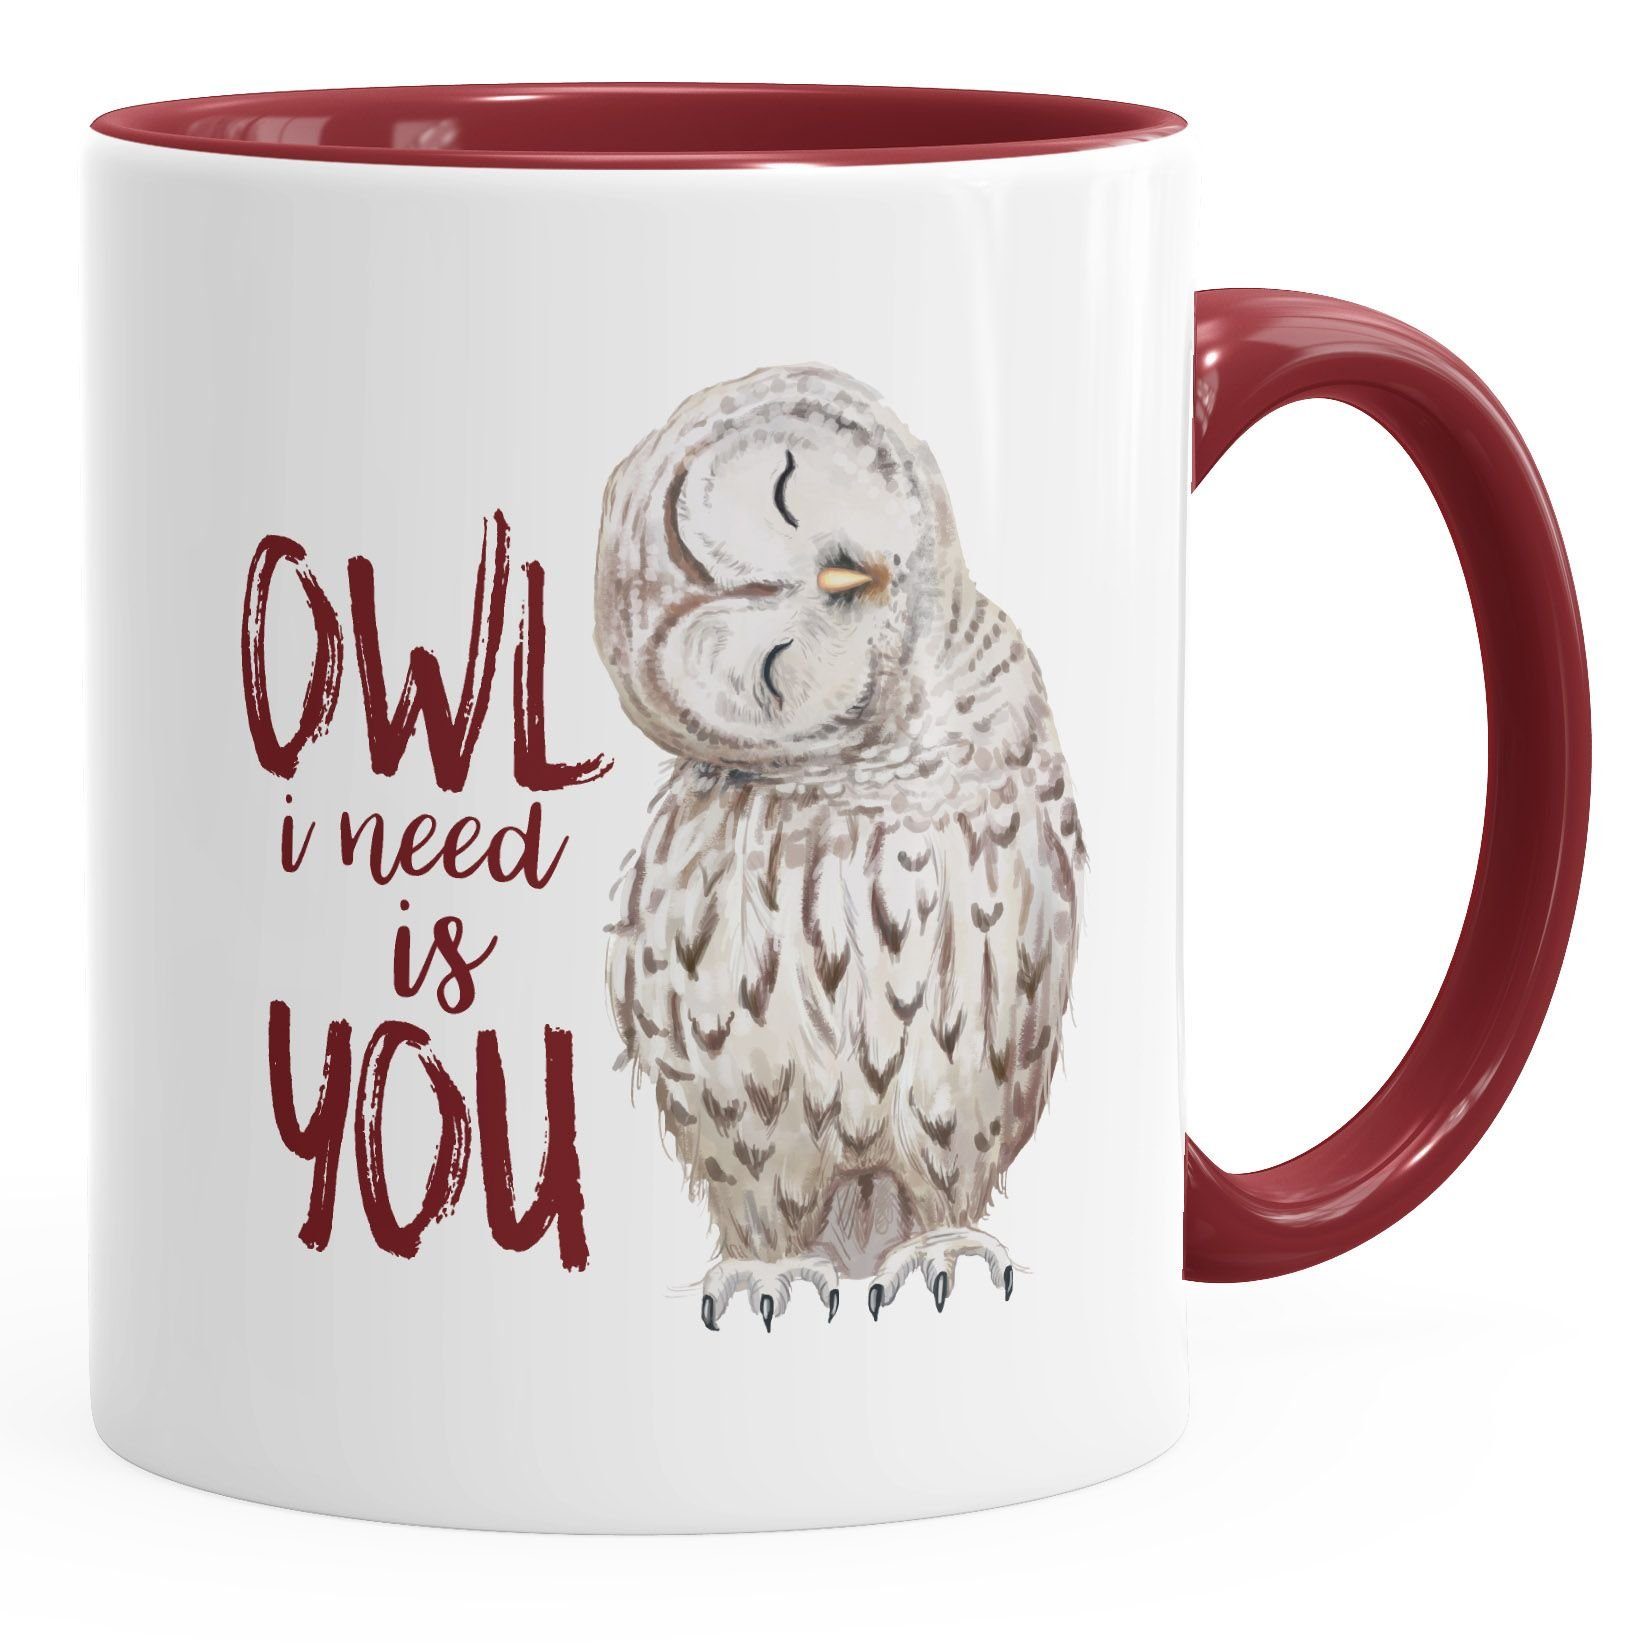 MoonWorks Tasse Kaffee-Tasse Eule Owl I need is you Liebe Spruch Geschenk Valentinstag Weihnachten Ehe Partnerschaft MoonWorks®, Keramik bordeauxrot